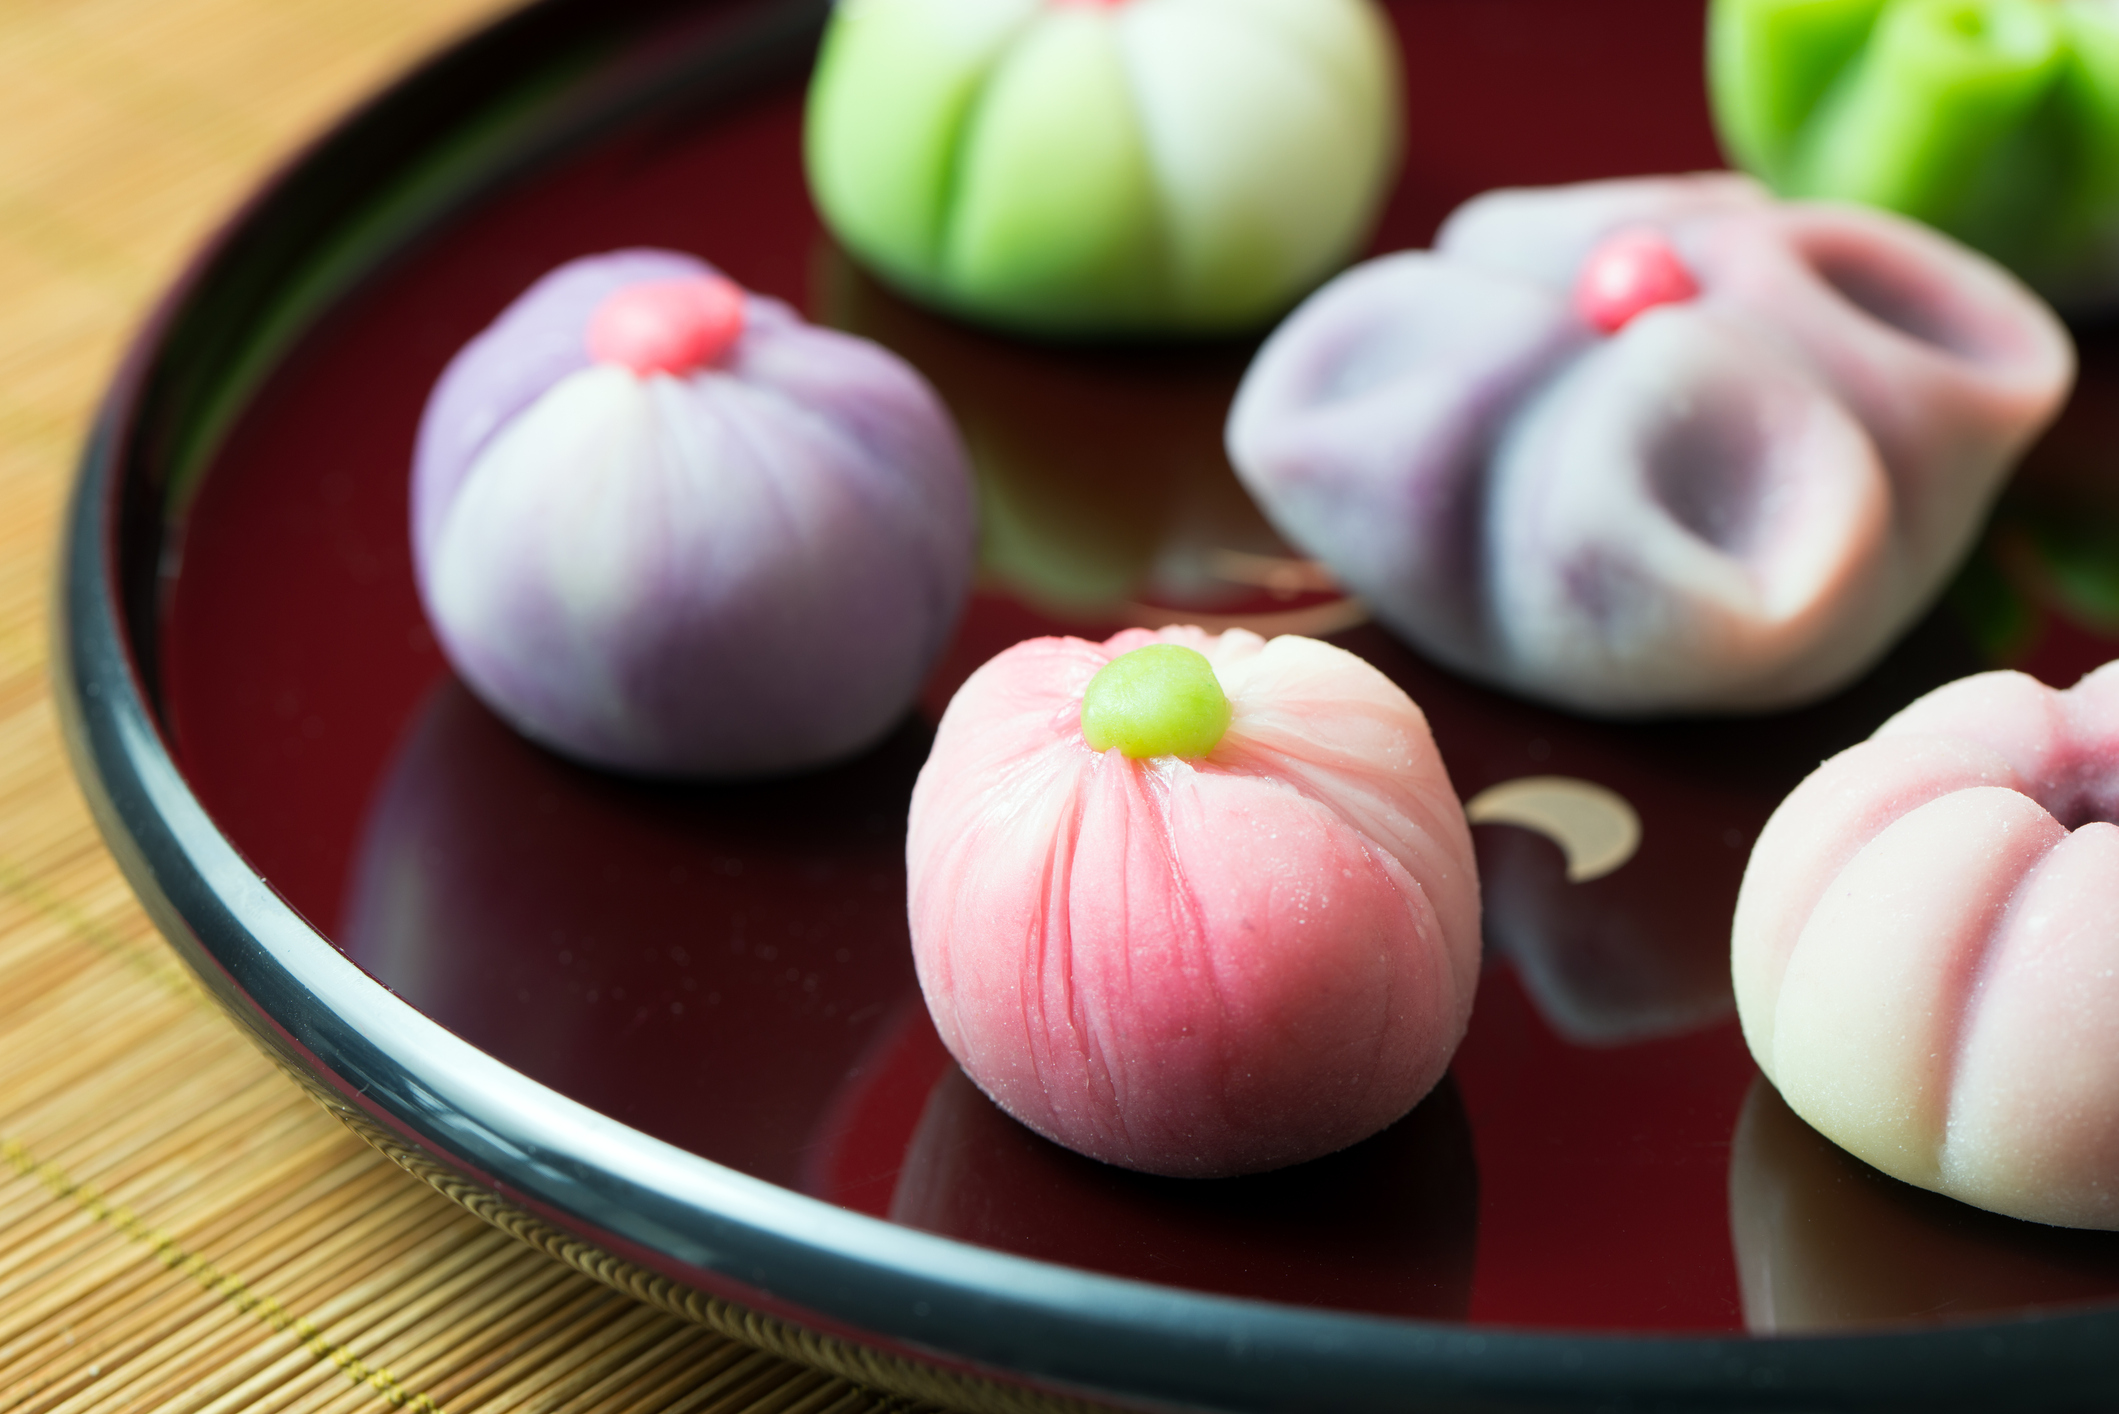 季節感も楽しめる 和菓子がおもてなしに良い理由とは でんき案内板